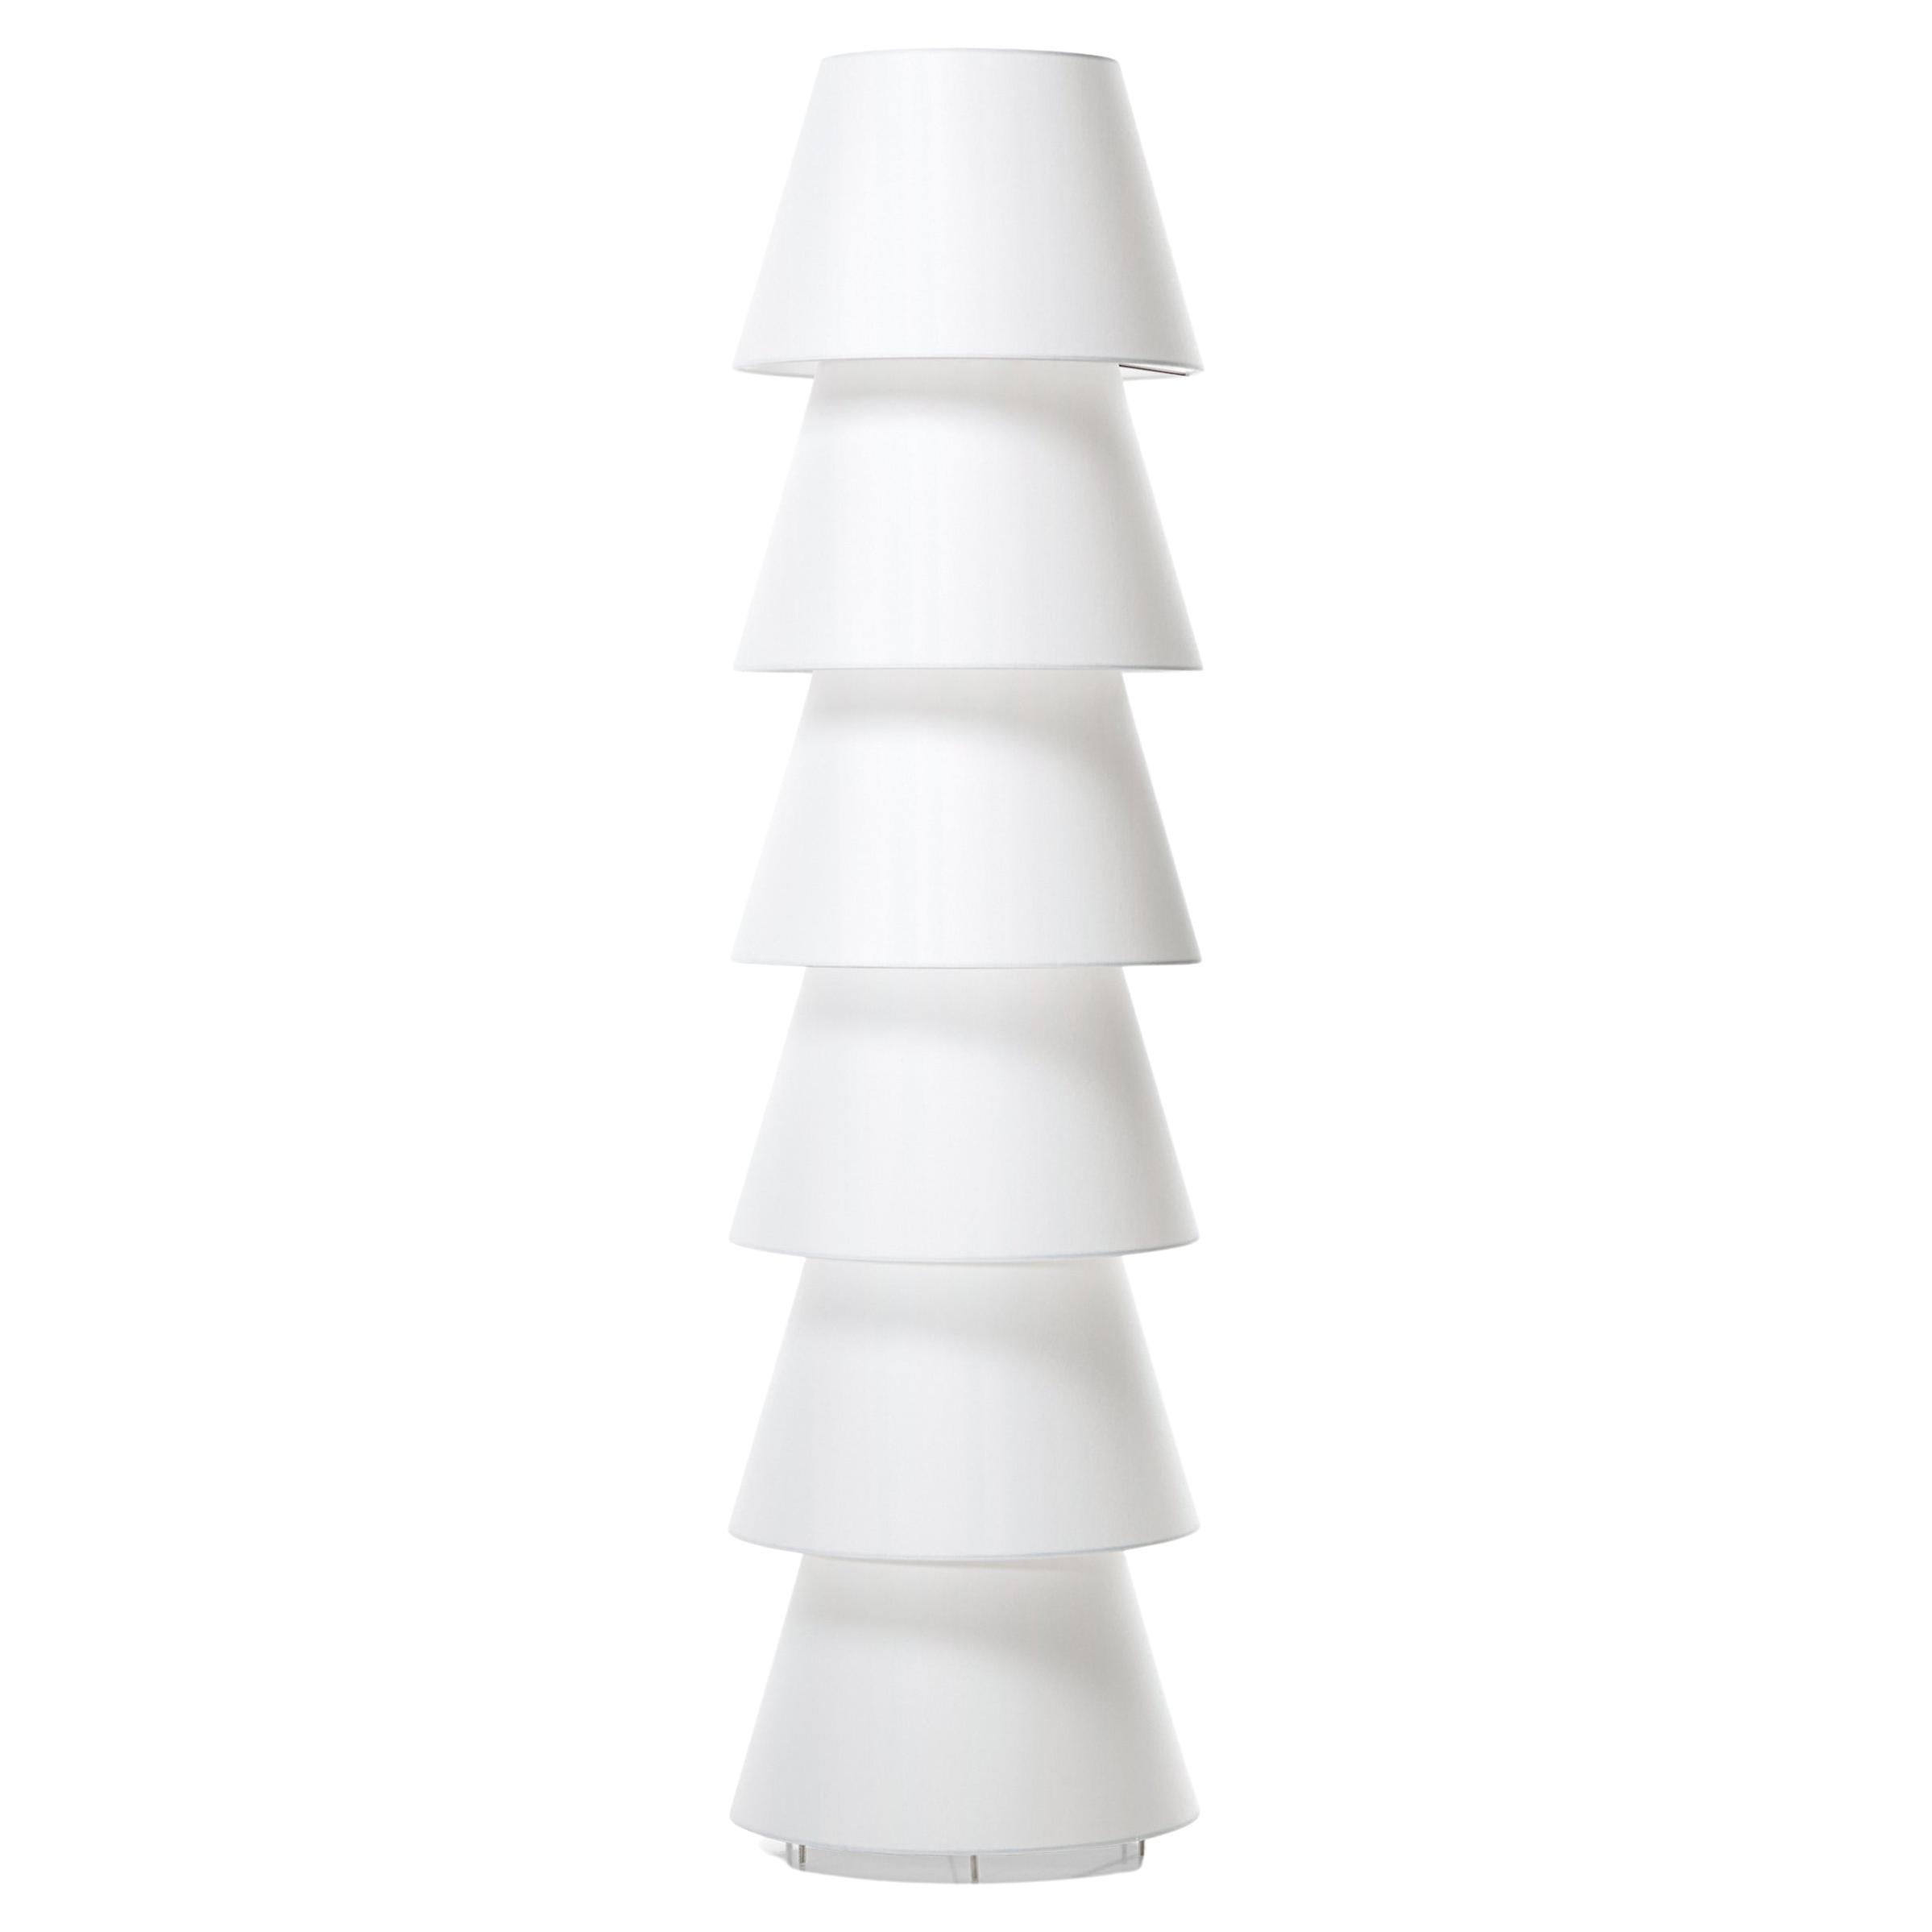 Moooi: Stehlampe mit 6 Lampenschirmen aus weißem PVC/Viskose-Laminat auf Metallrahmen